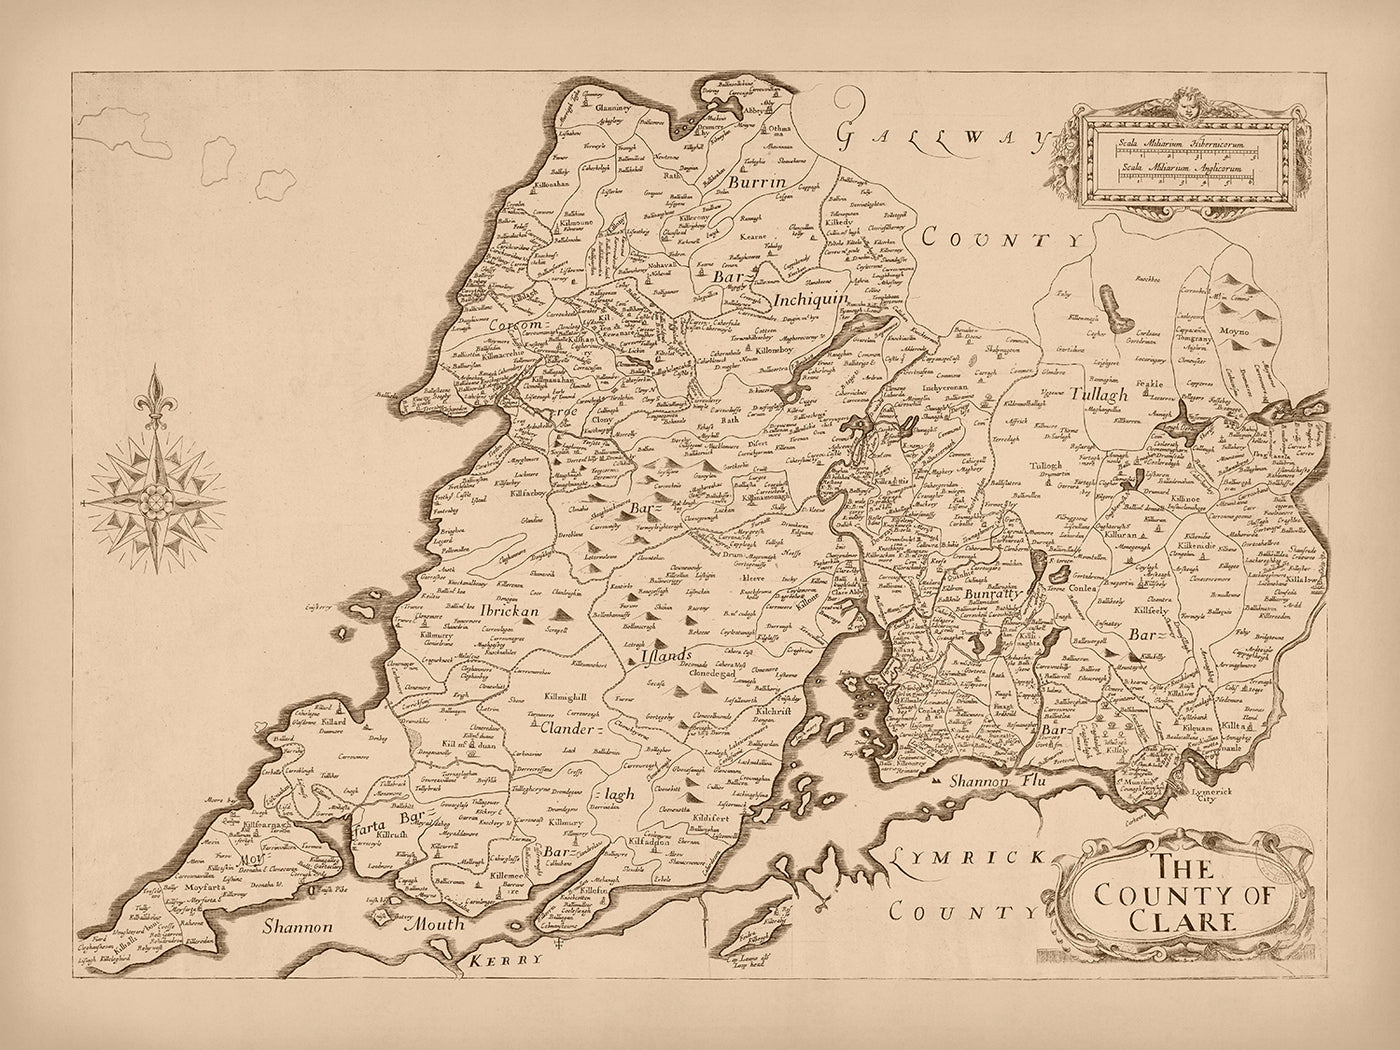 Alte Karte der Grafschaft Clare von Petty, 1685: Bunratty Castle, Cliffs of Moher, The Burren, Loop Head, Kilrush